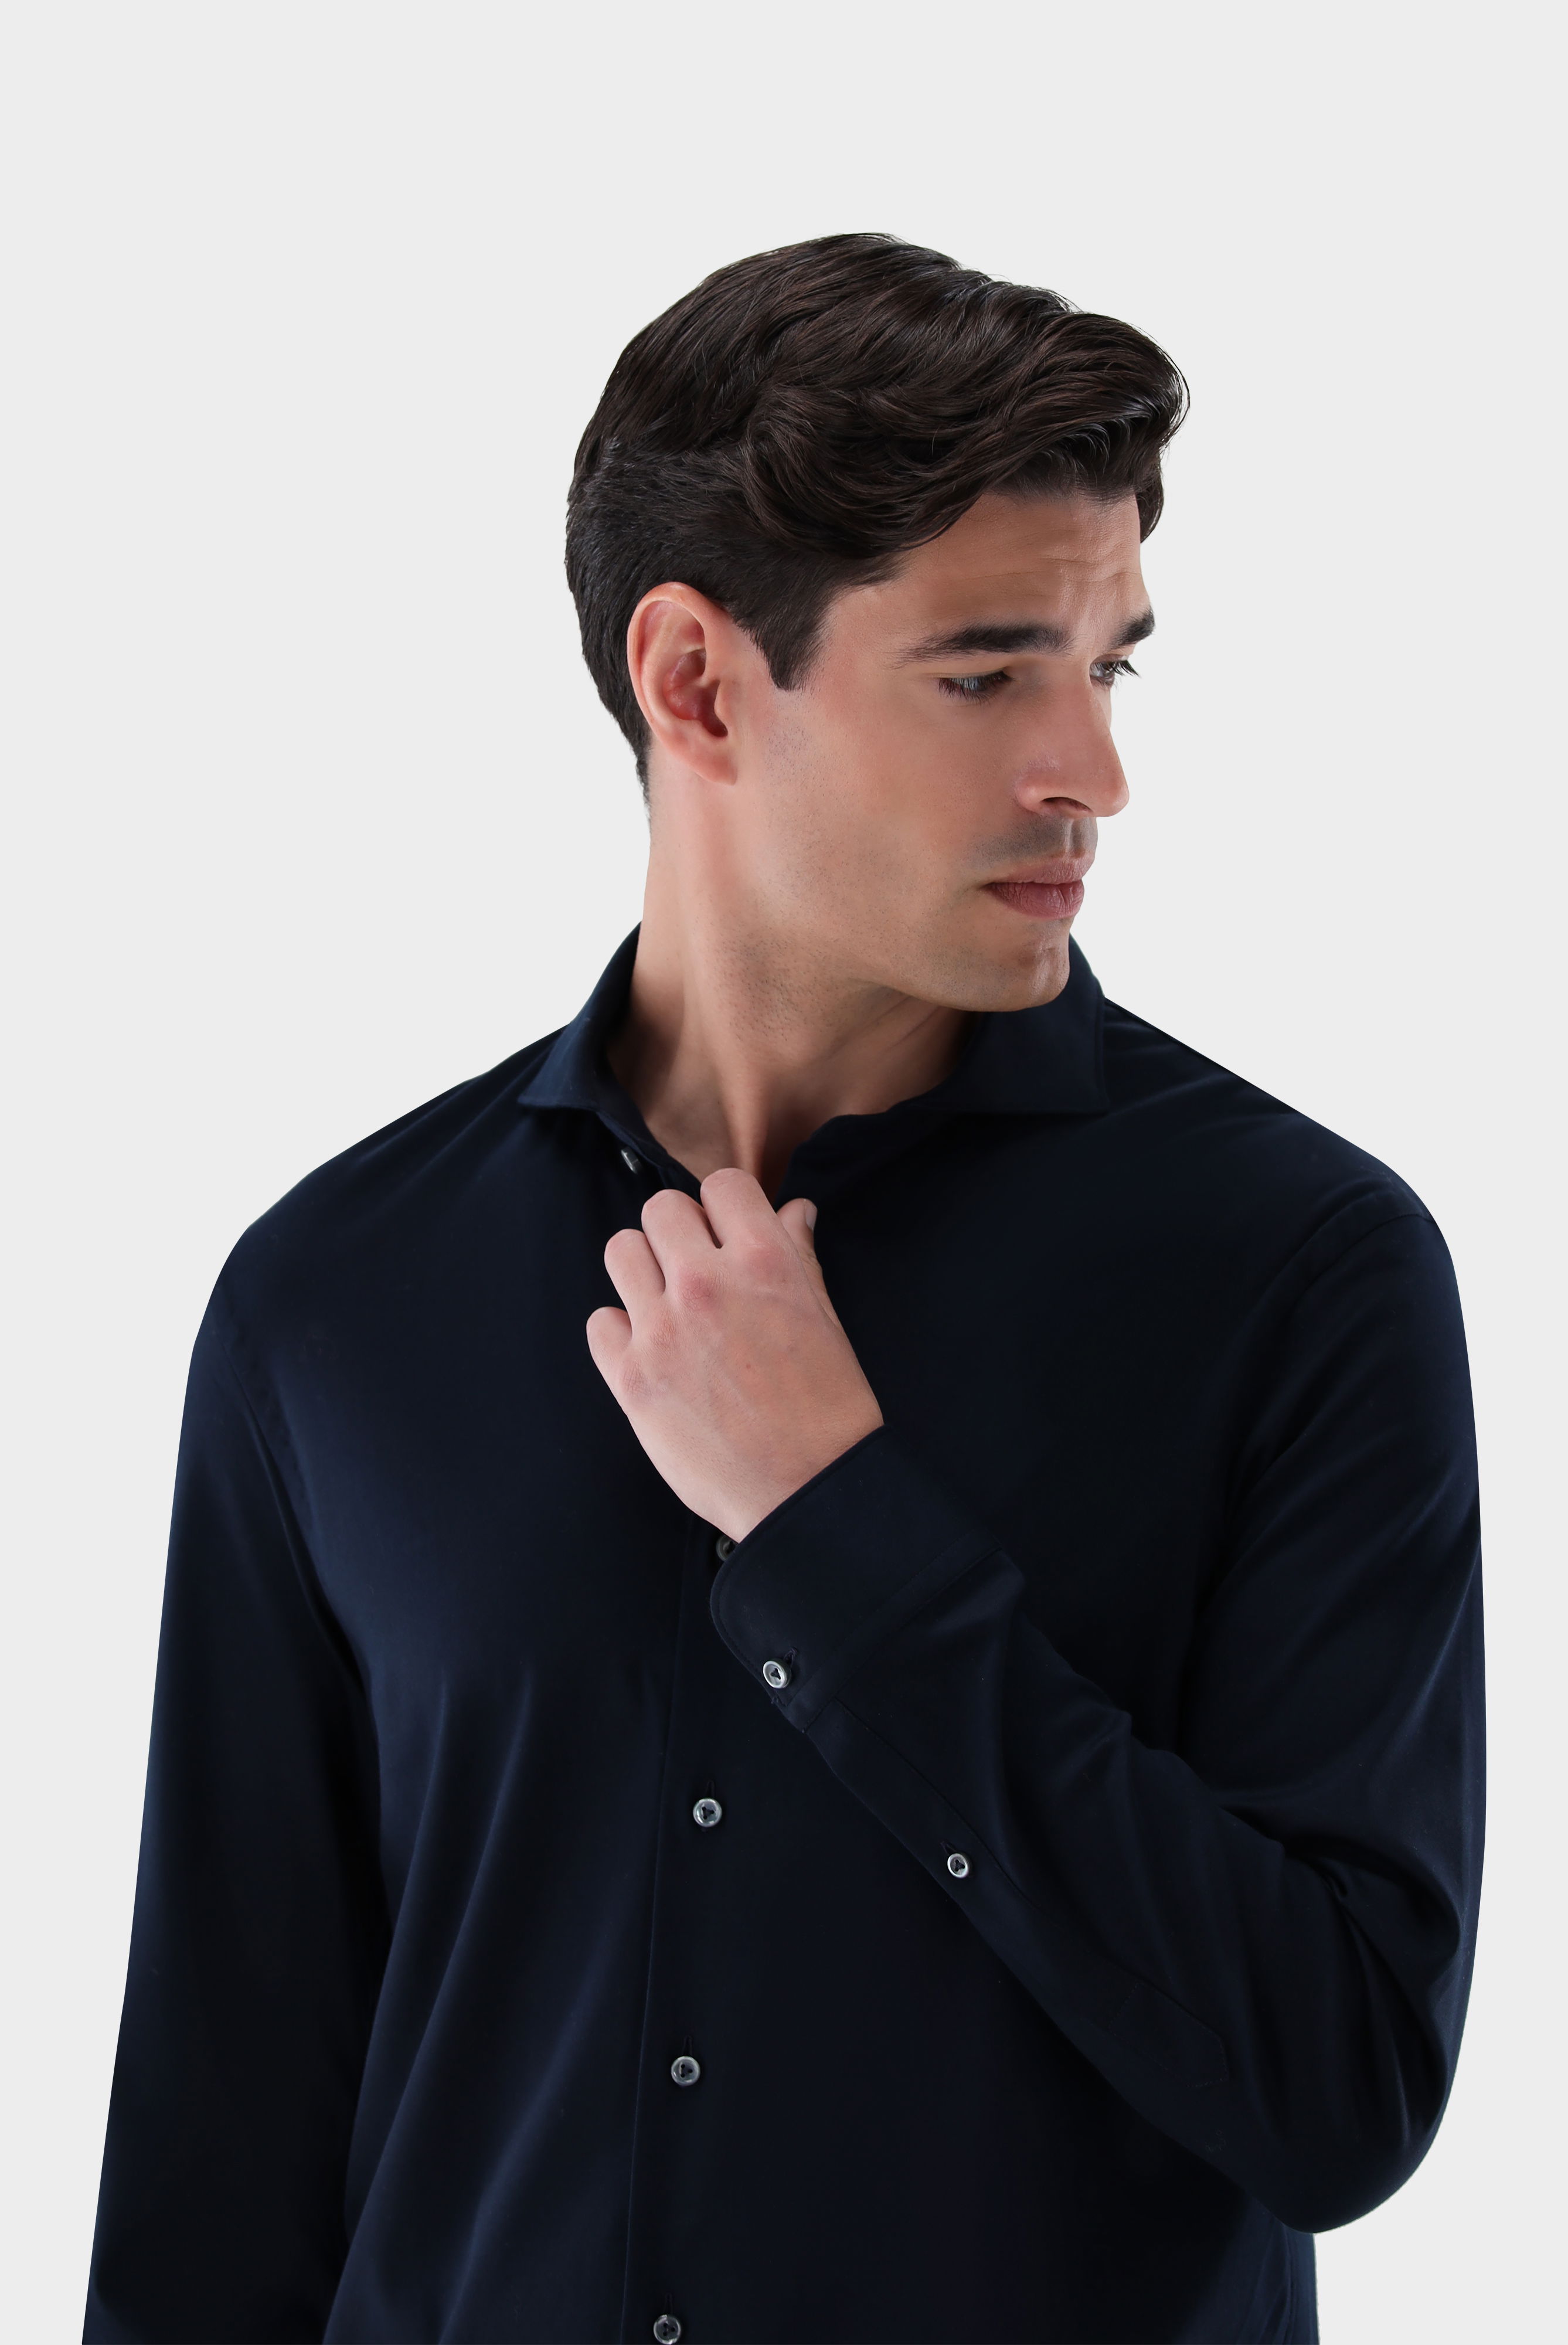 Jersey Hemden+Jersey Hemd aus Schweizer Baumwolle Slim Fit+20.1682.UC.180031.790.XS